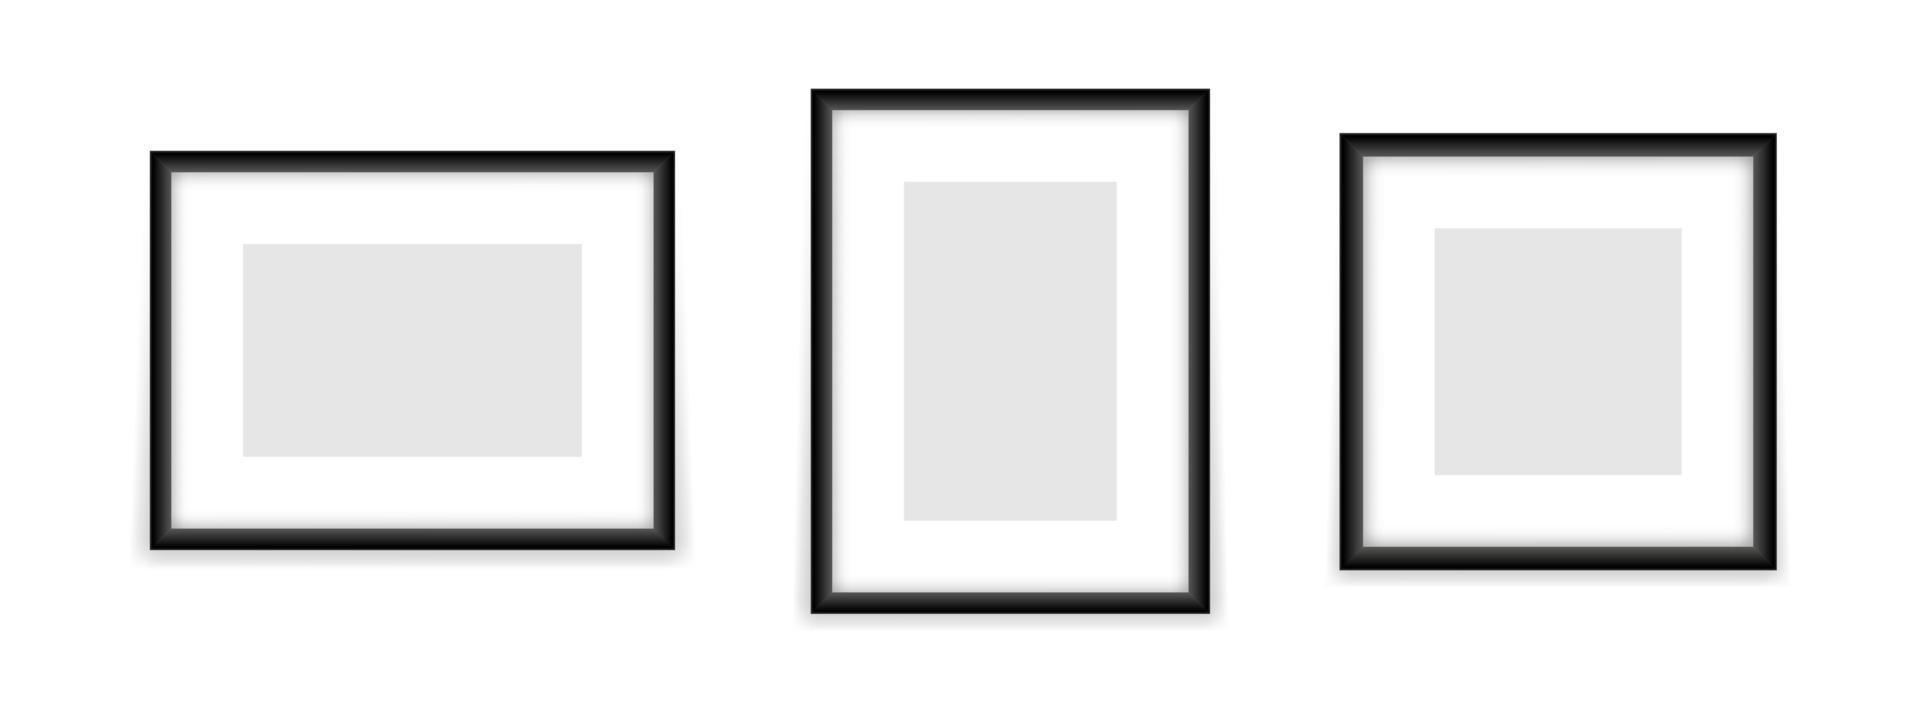 plantilla de marcos rectangulares y cuadrados vacíos. maqueta en blanco con espacio gris para fotos y dibujos. diseño realista para imagen e imagen vectorial promocional vector